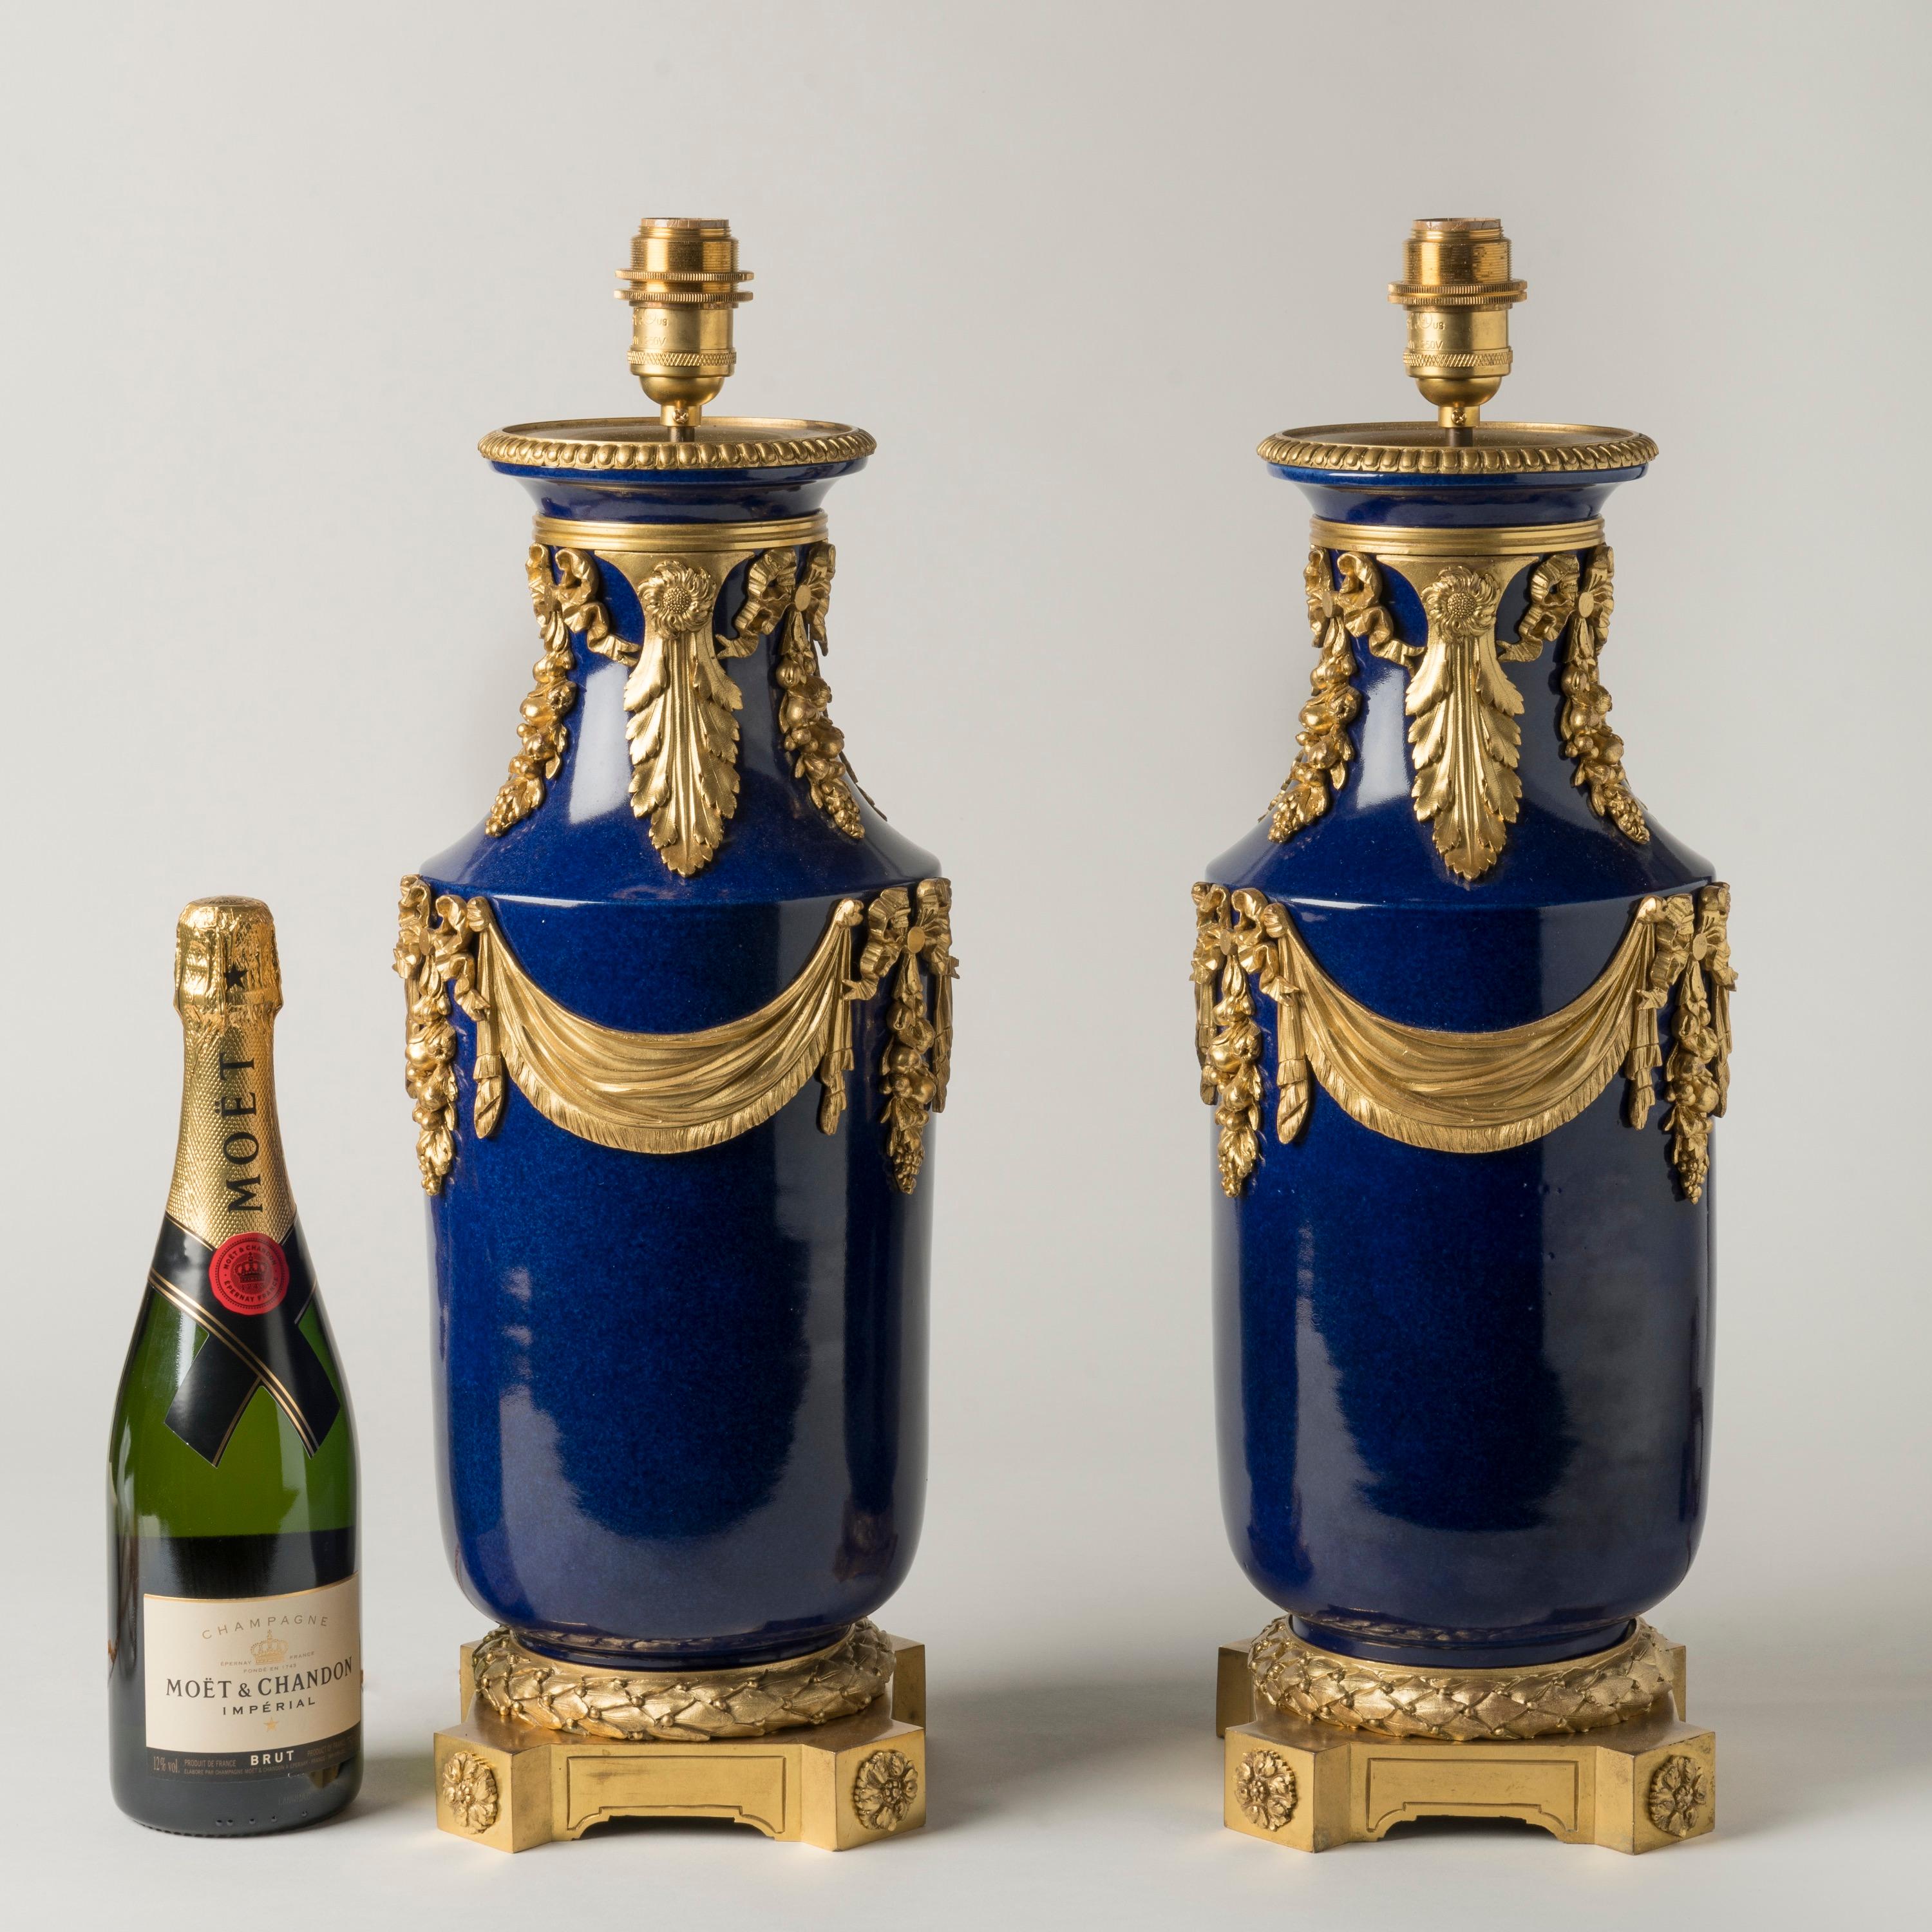 Paire de lampes en porcelaine bleue montées sur bronze doré
Dans le style Louis XVI

Les vases en porcelaine bleu cobalt sont montés avec goût de guirlandes drapées en bronze doré, de grappes de fruits nouées par des rubans et de feuilles d'acanthe.